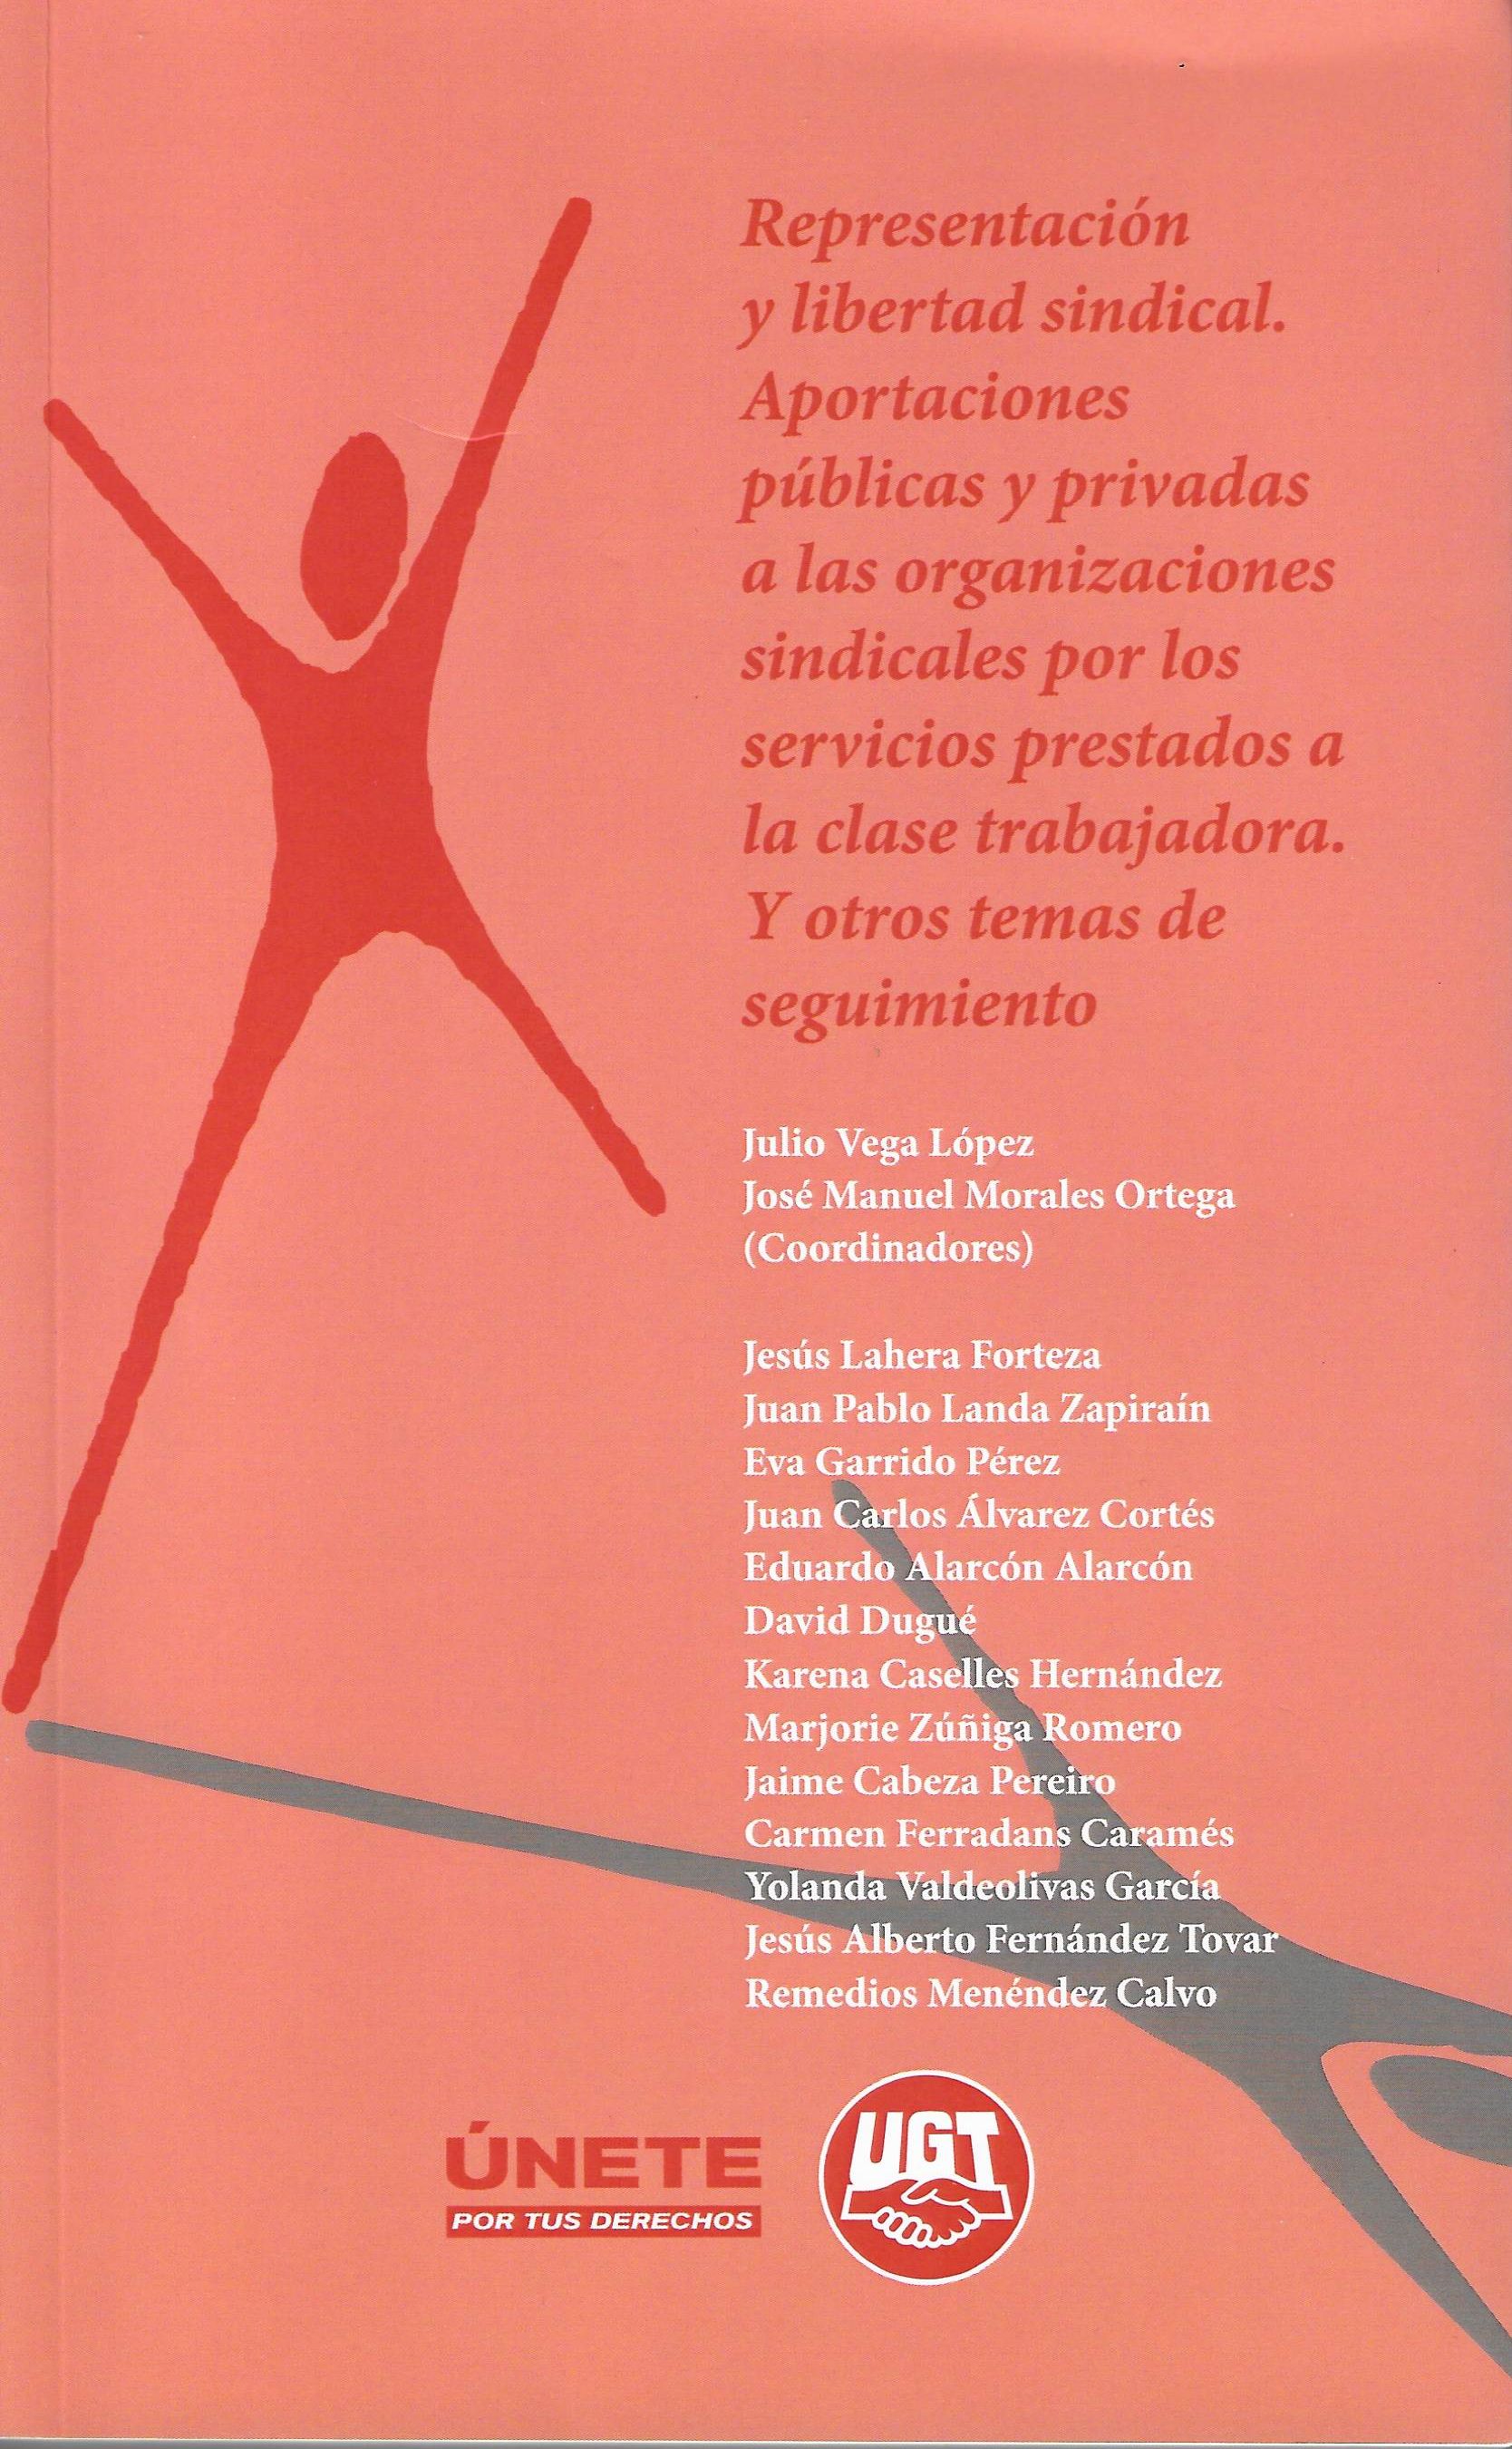 Imagen de portada del libro Representación y libertad sindical